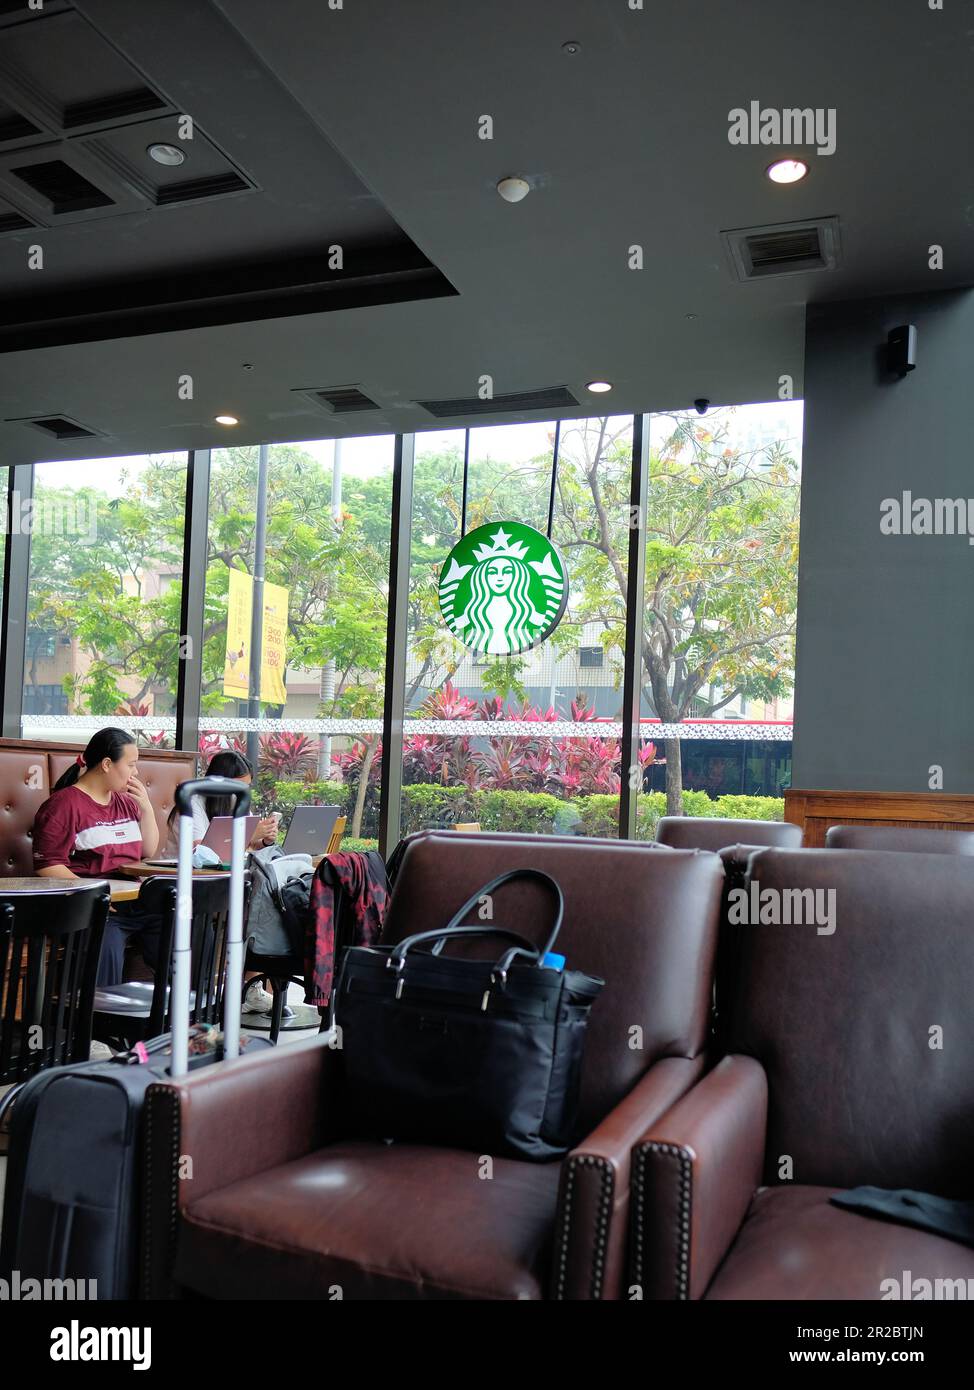 Innenansicht Starbucks Coffee Shop Standort in Kaohsiung, Taiwan; Studenten studieren; amerikanische Geschäftsinteressen und Investitionen im Ausland und in Asien. Stockfoto